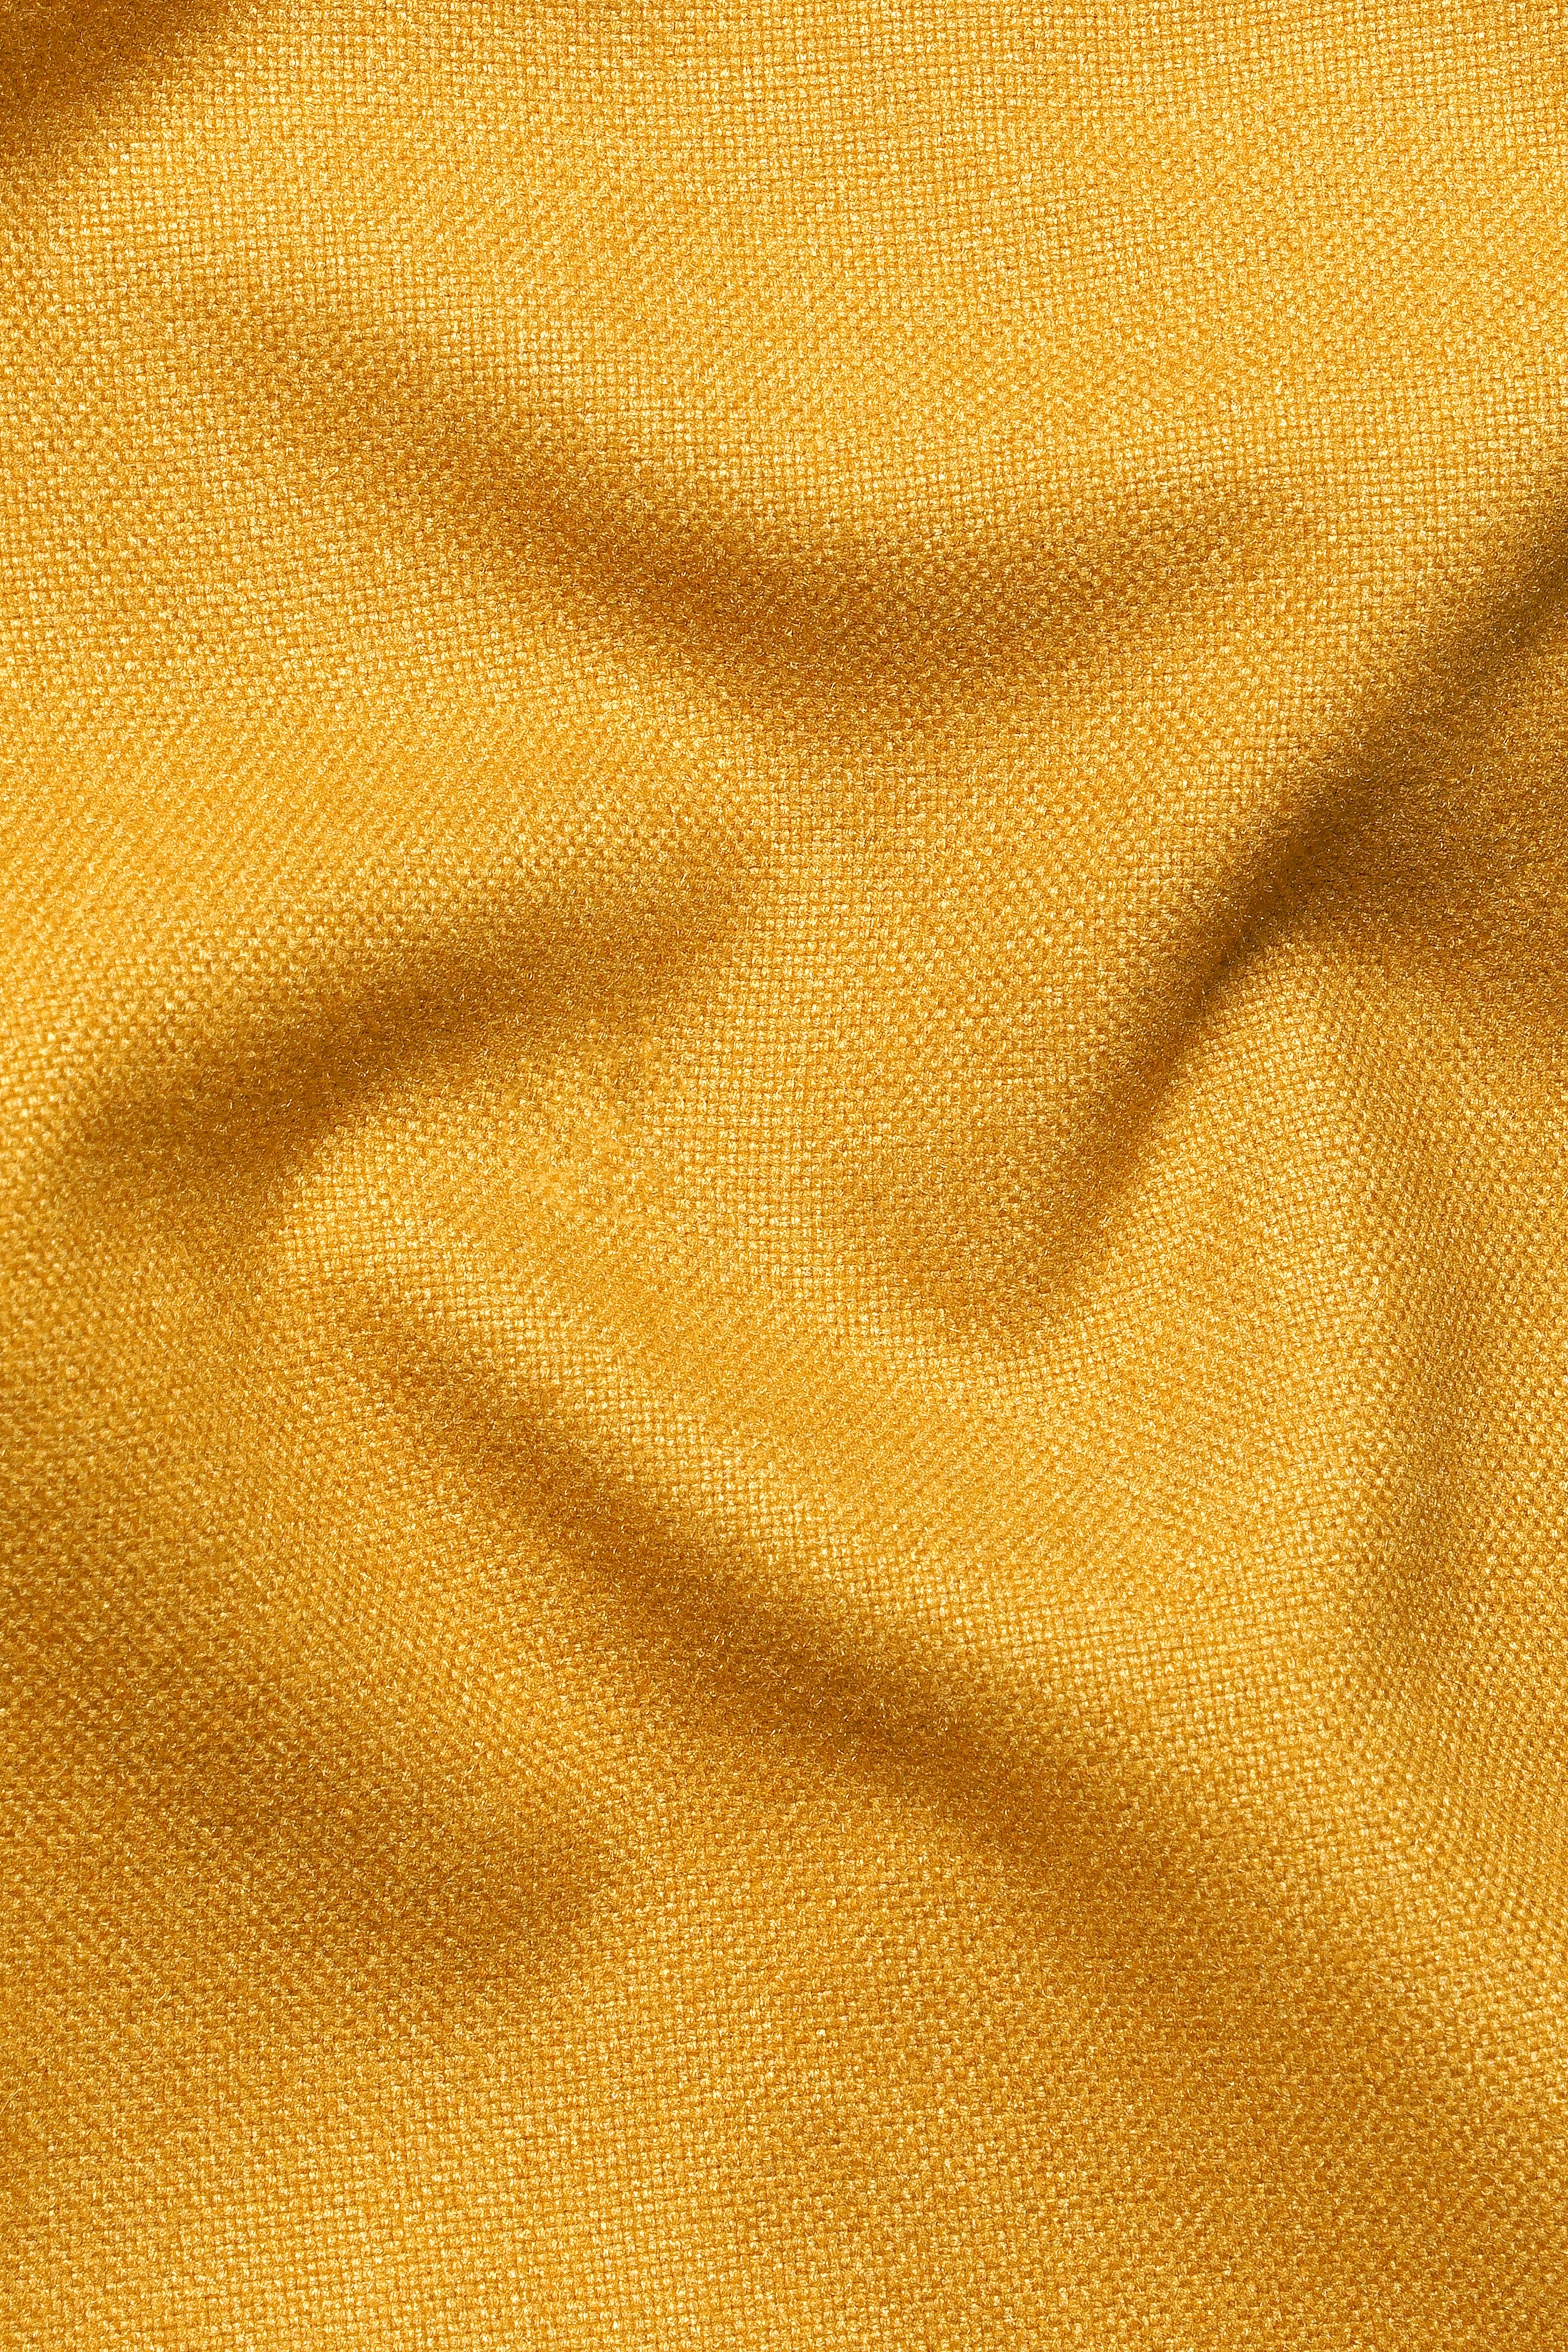 Amber Yellow Wool Rich Designer Blazer